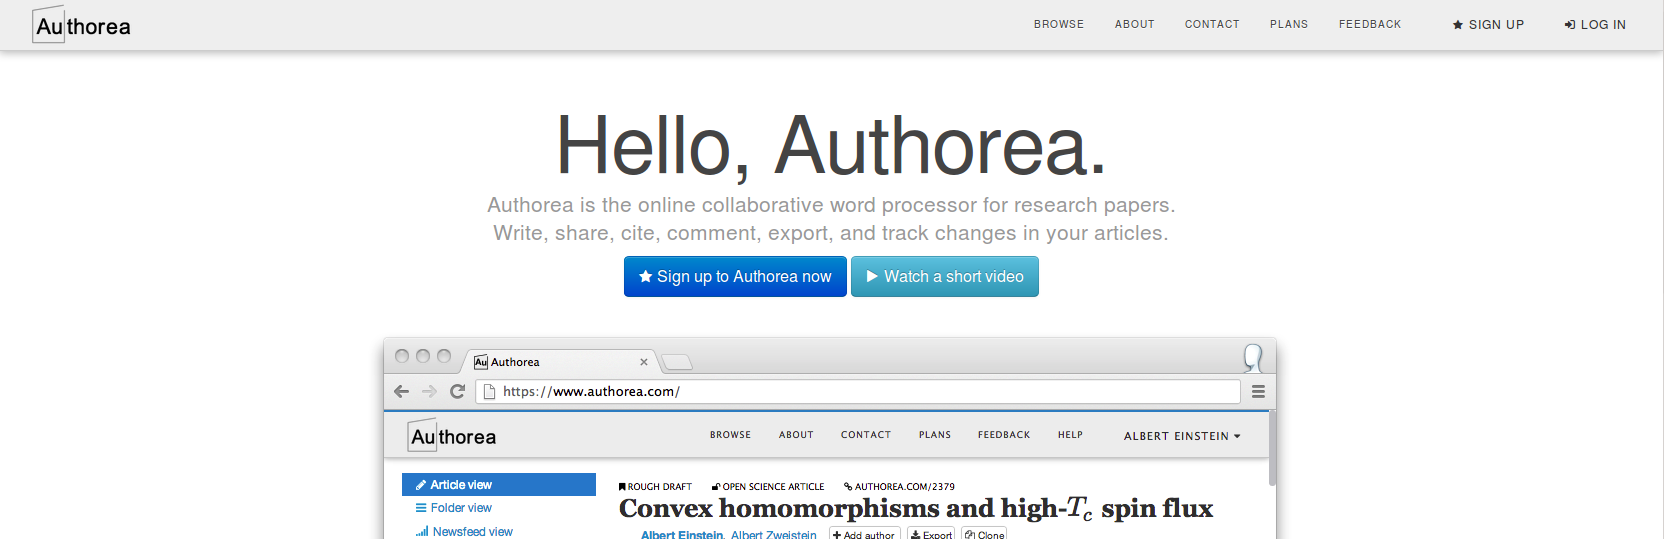 Authorea Homepage